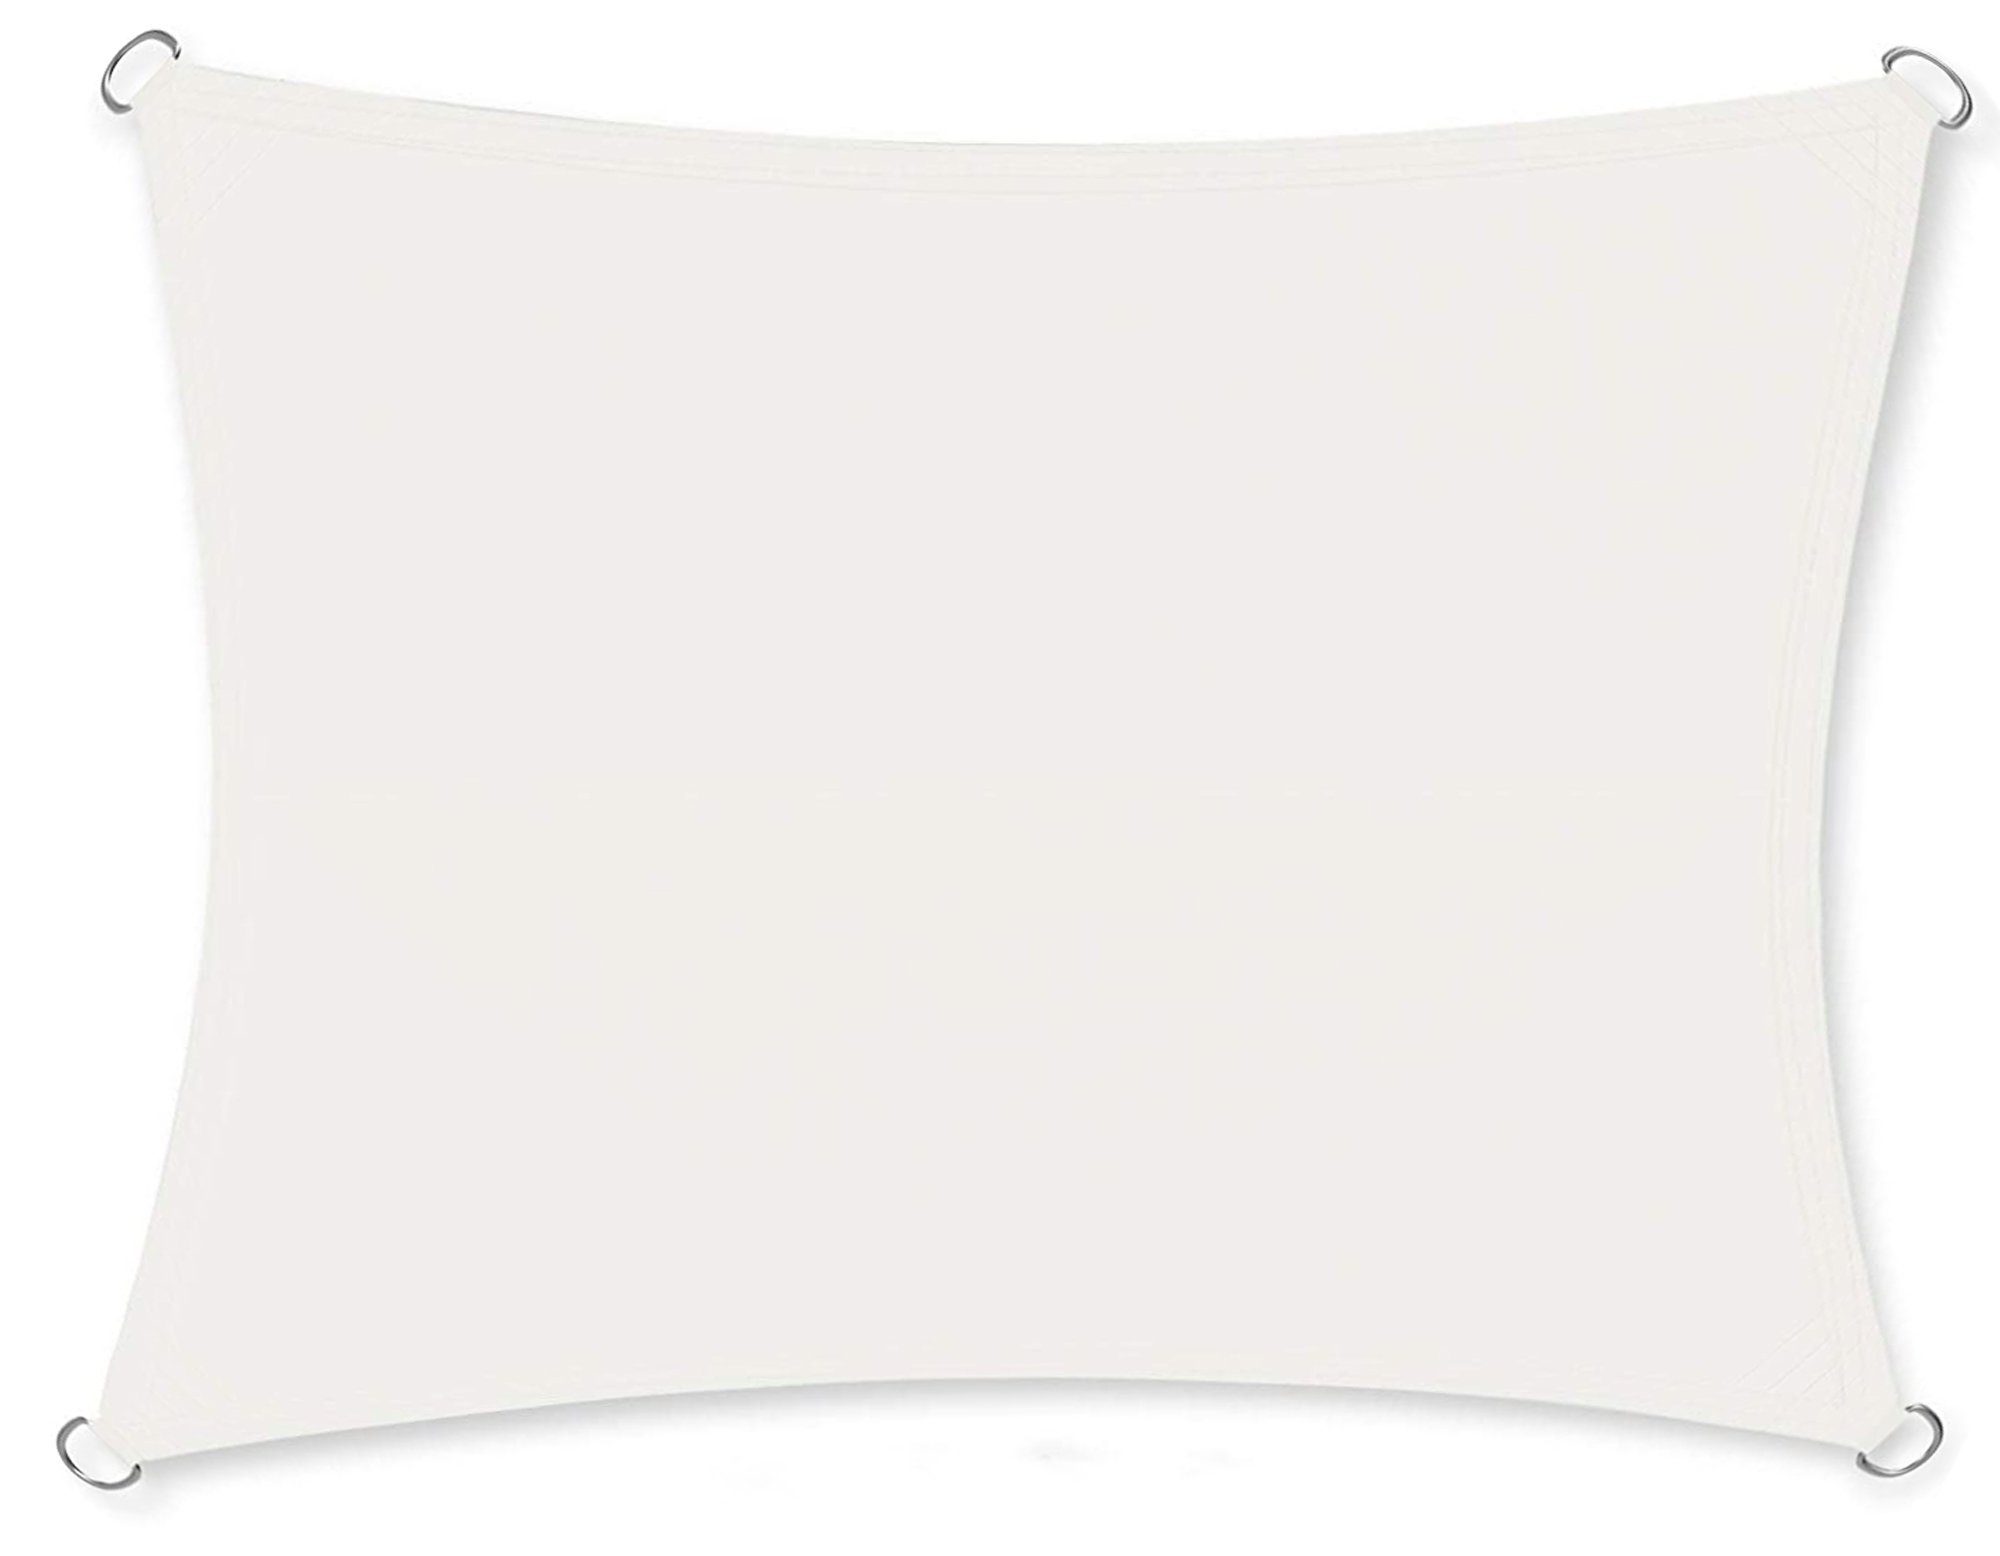 osoltus Seilspannsonnensegel Sonnensegel 3x2m weiß rechteckig Capri wasserabweisend